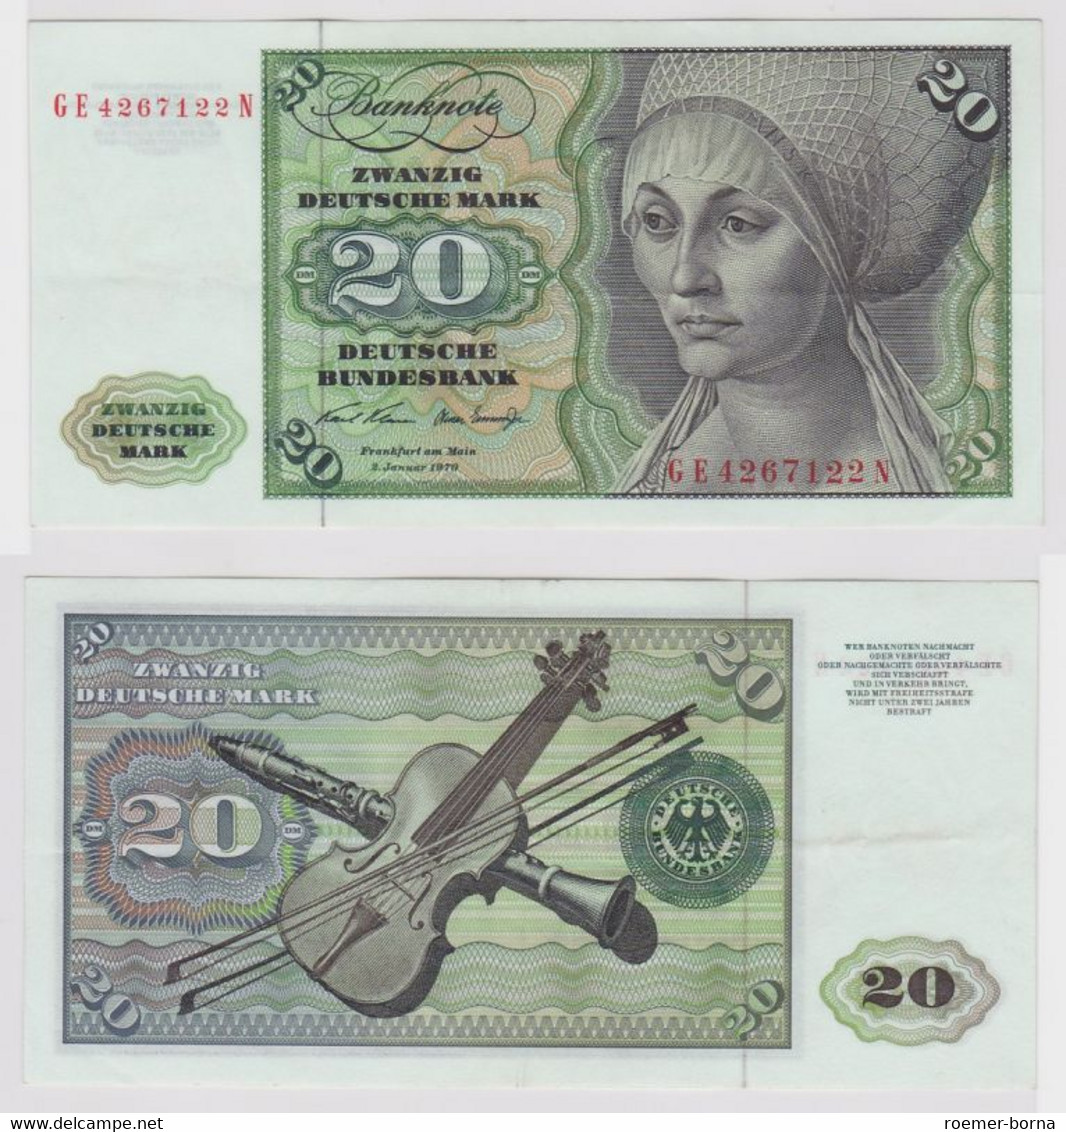 T148148 Banknote 20 DM Deutsche Mark Ro. 271b Schein 2.Jan. 1970 KN GE 4267122 N - 20 Deutsche Mark